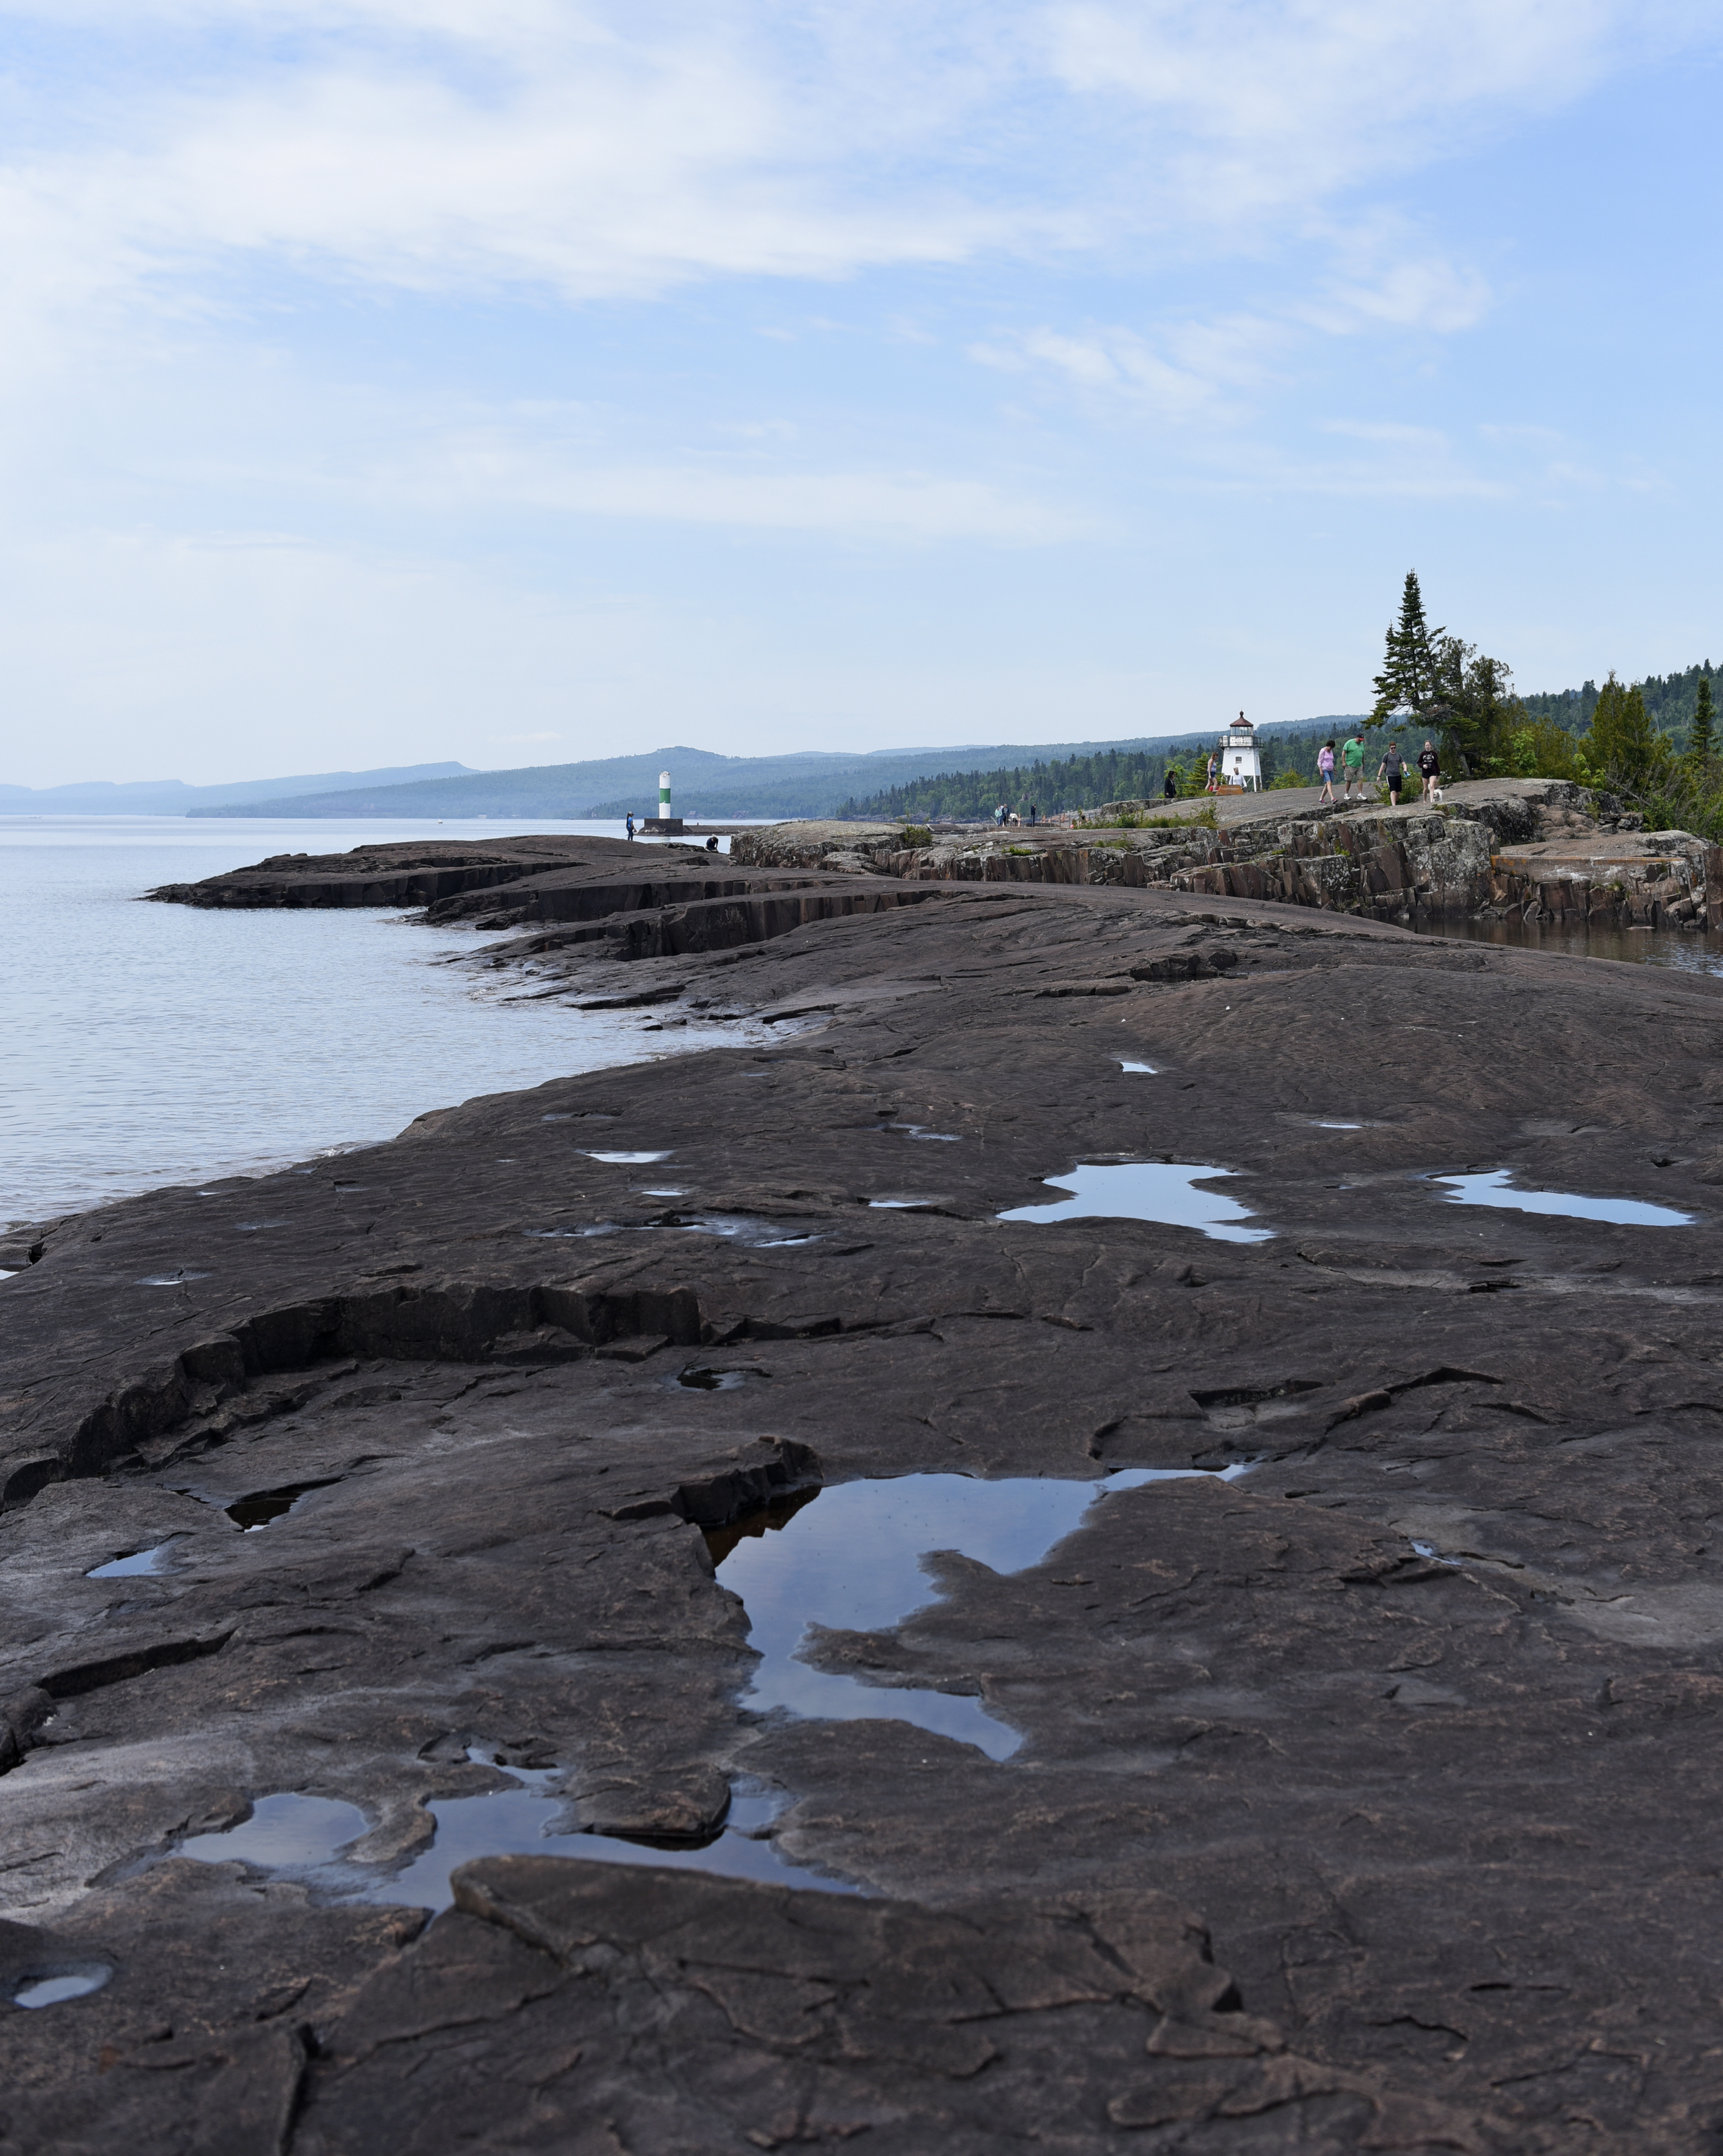  The Lake Superior shoreline in Grand Marais, Minn.&nbsp; 